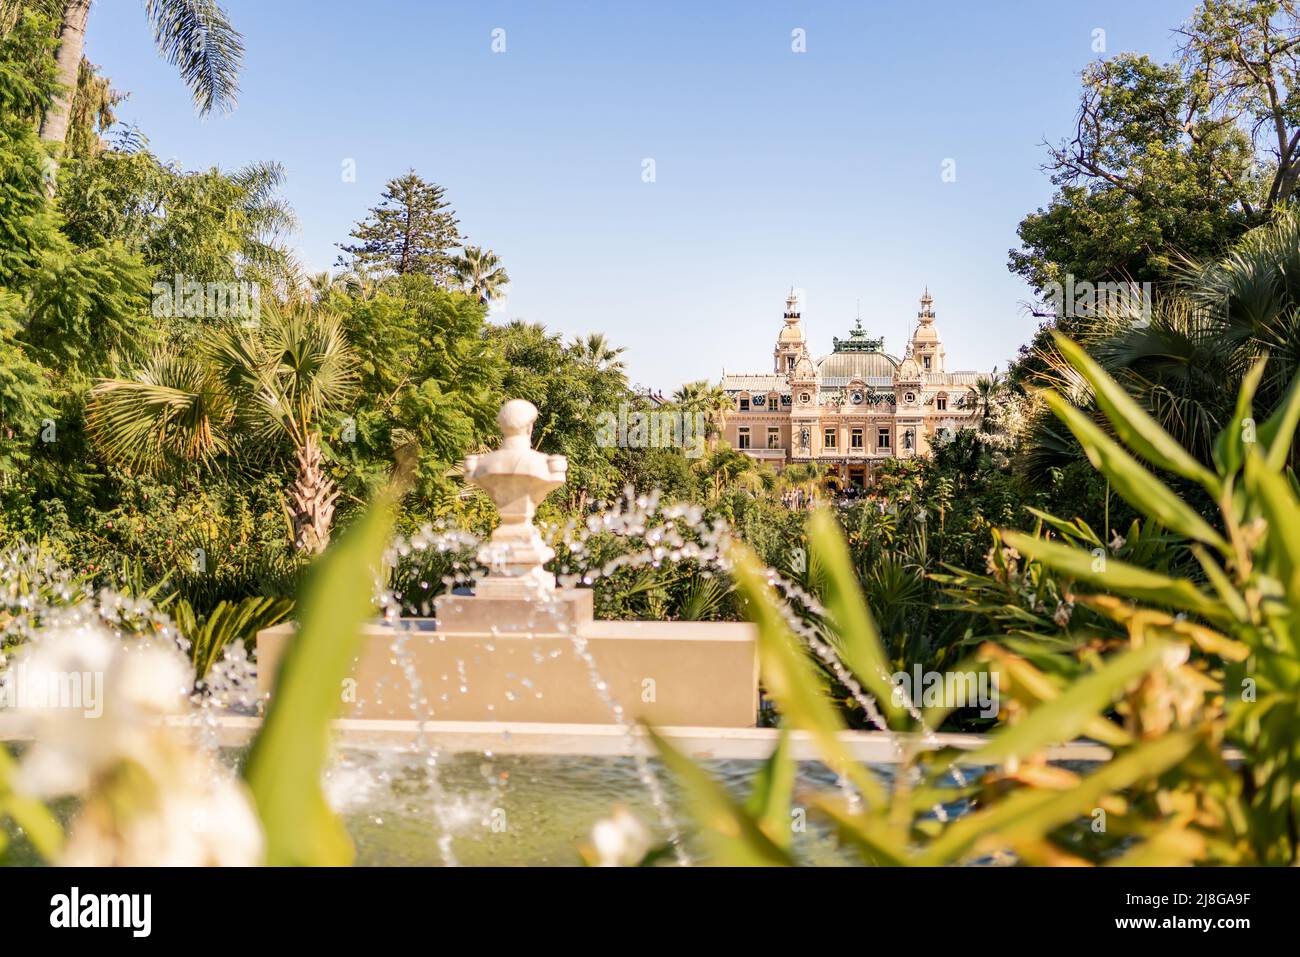 MONACO - 22 SETTEMBRE 2021: Il Casinò di Monte Carlo visto dal parco giardino. Il posto è famoso per il gioco d'azzardo e lo stile di vita di lusso. Foto Stock